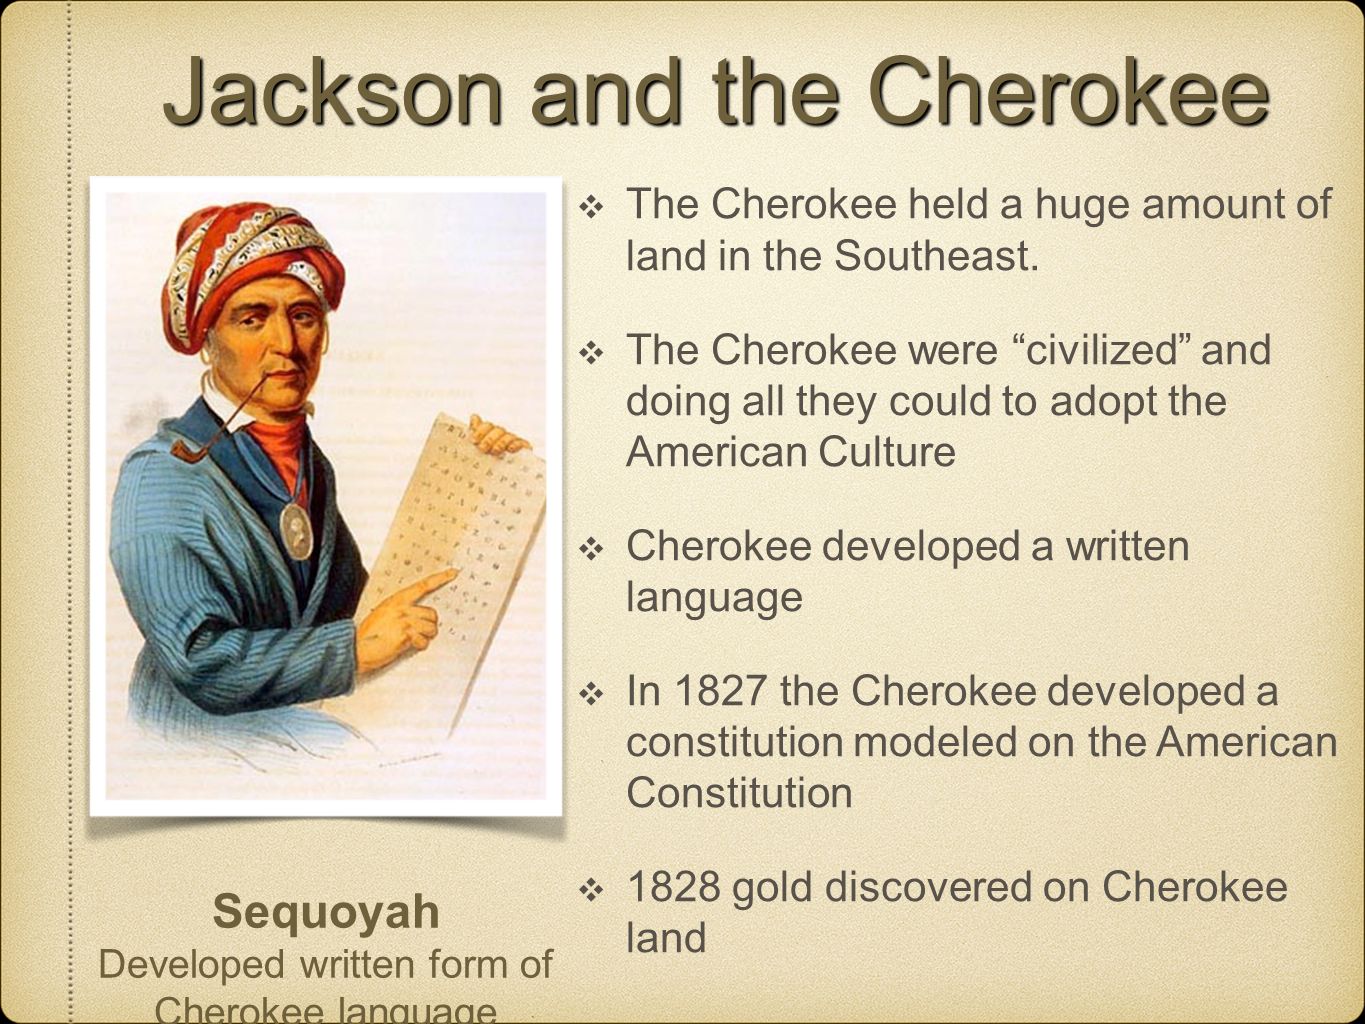 Jackson and the Cherokee